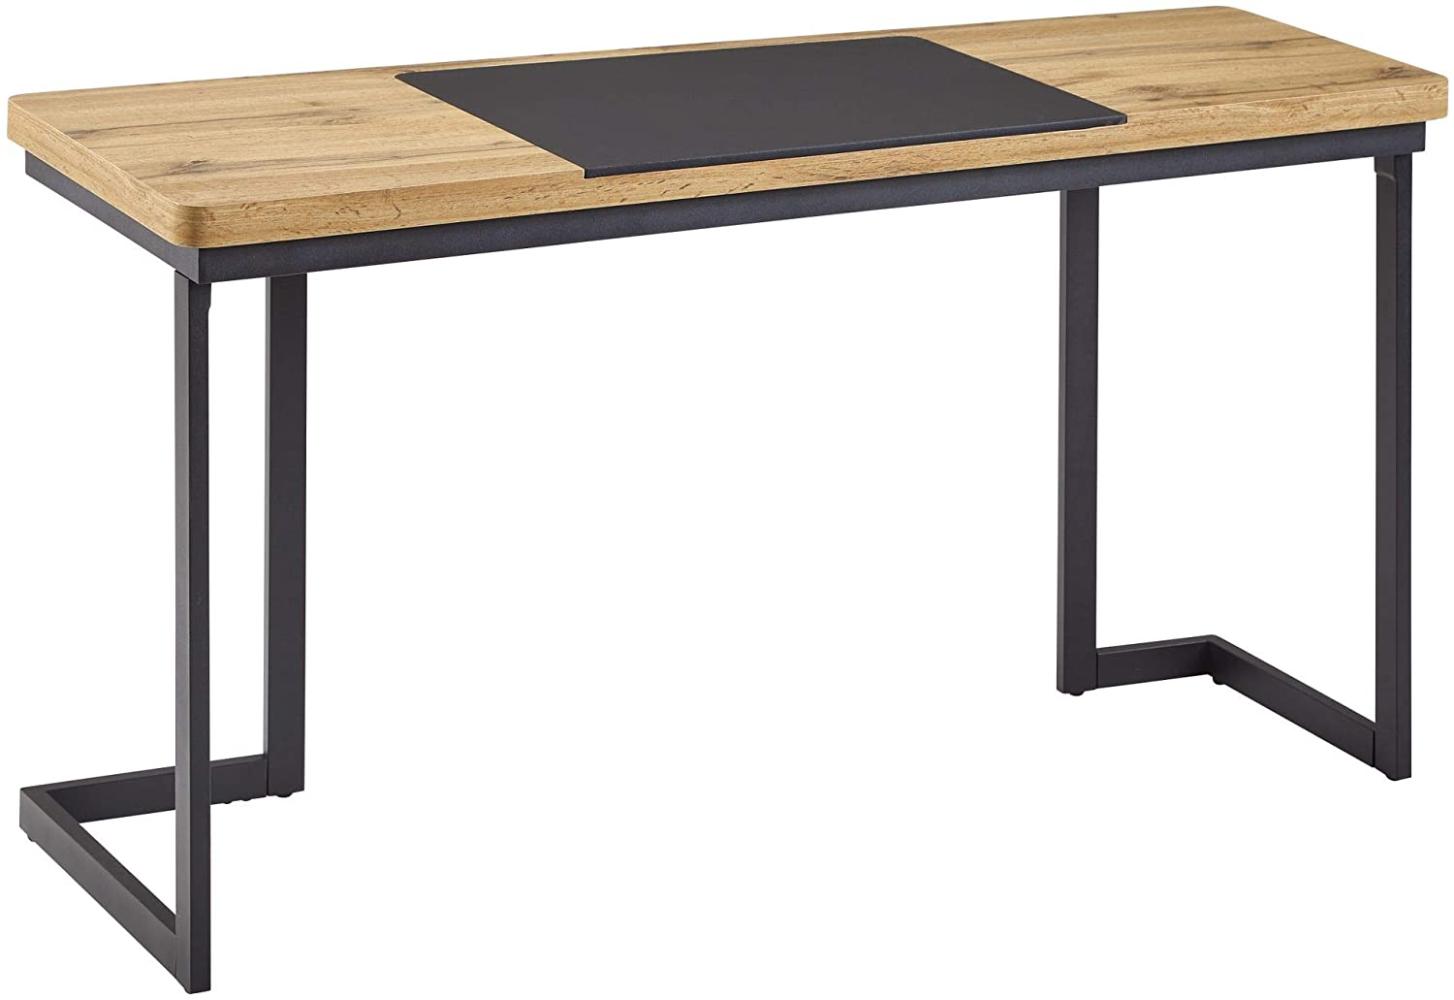 Wohnling Schreibtisch, braun/schwarz, Holz/Metall, 140x76x55 cm Bild 1